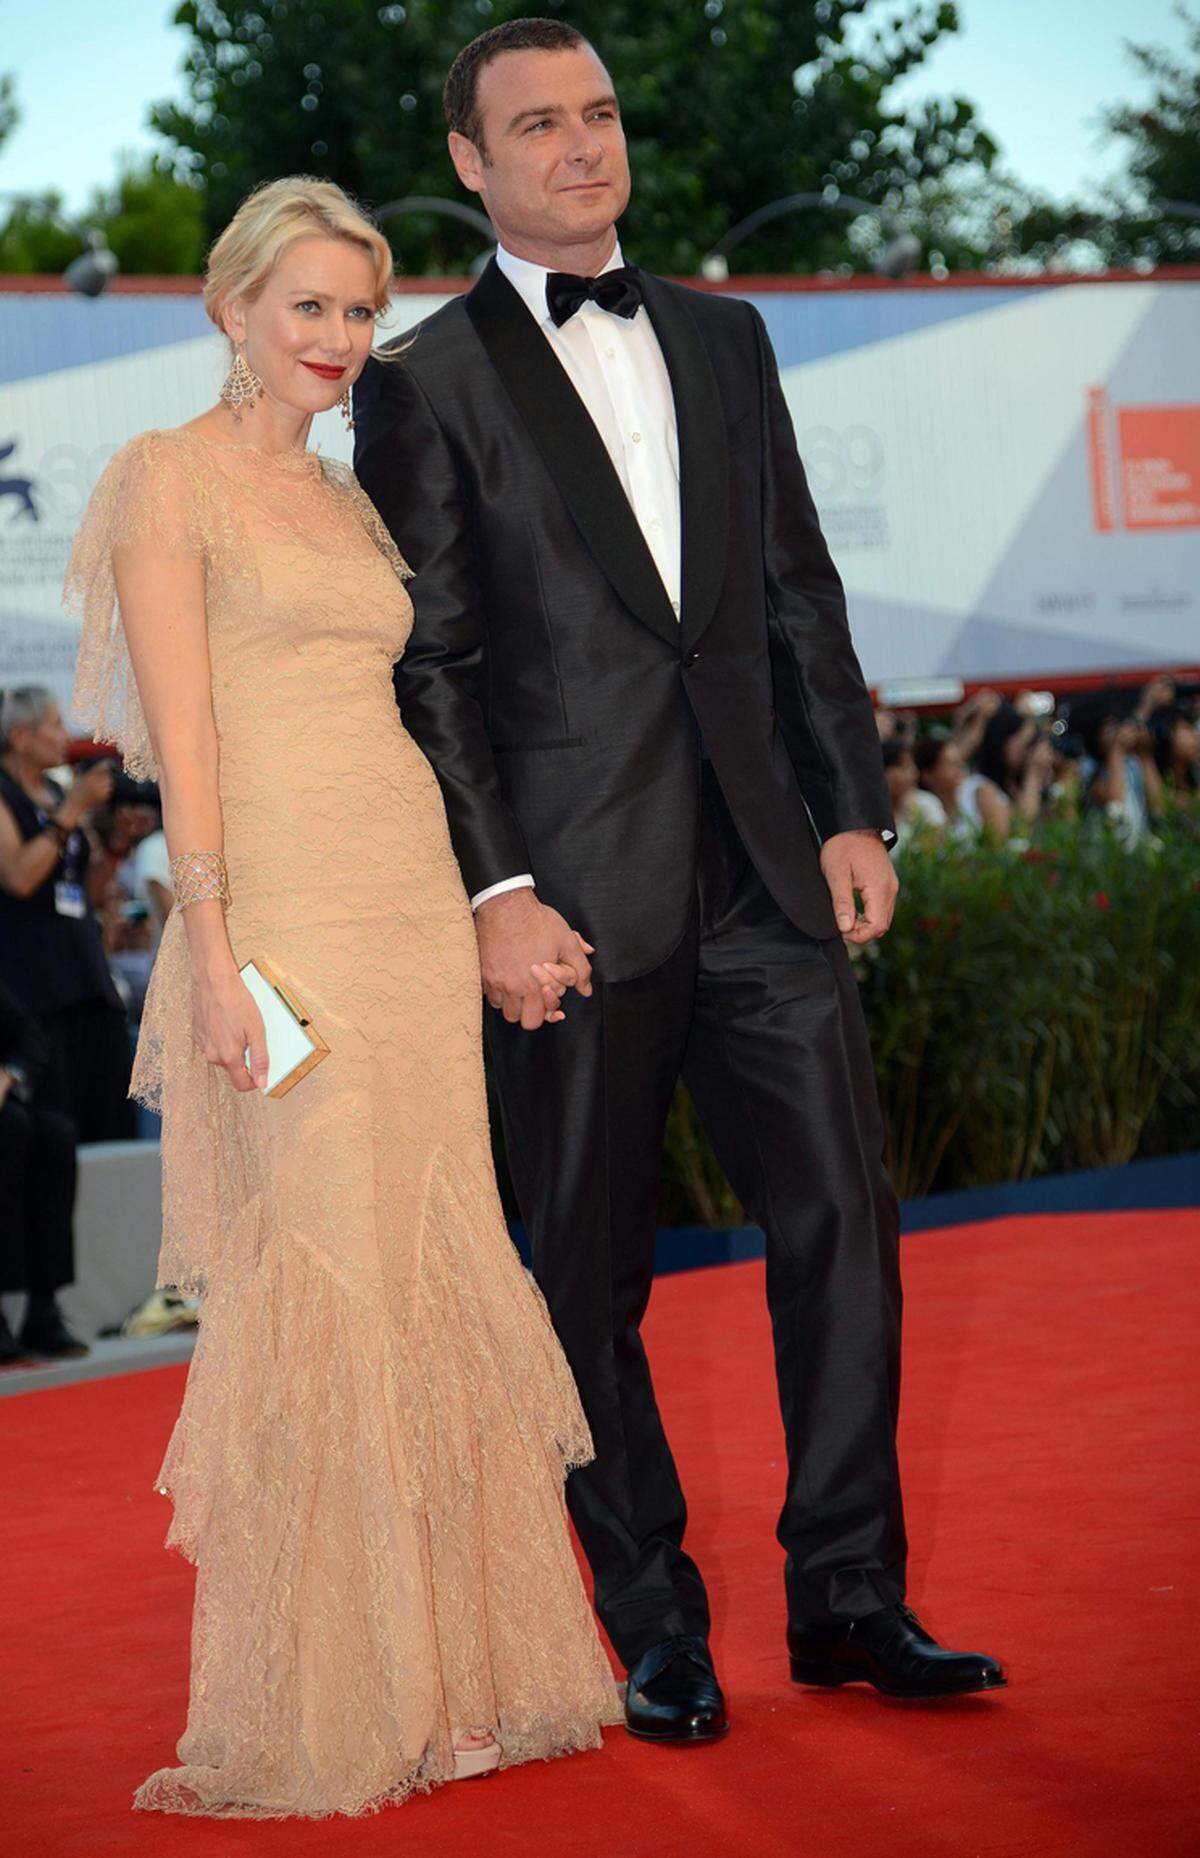 Zarte Spitze zierte auch das nudefarbene Marchesa-Kleid von Schauspielerin Naomi Watts, die in Begleitung von Liev Schreiber über den Catwalk schritt.